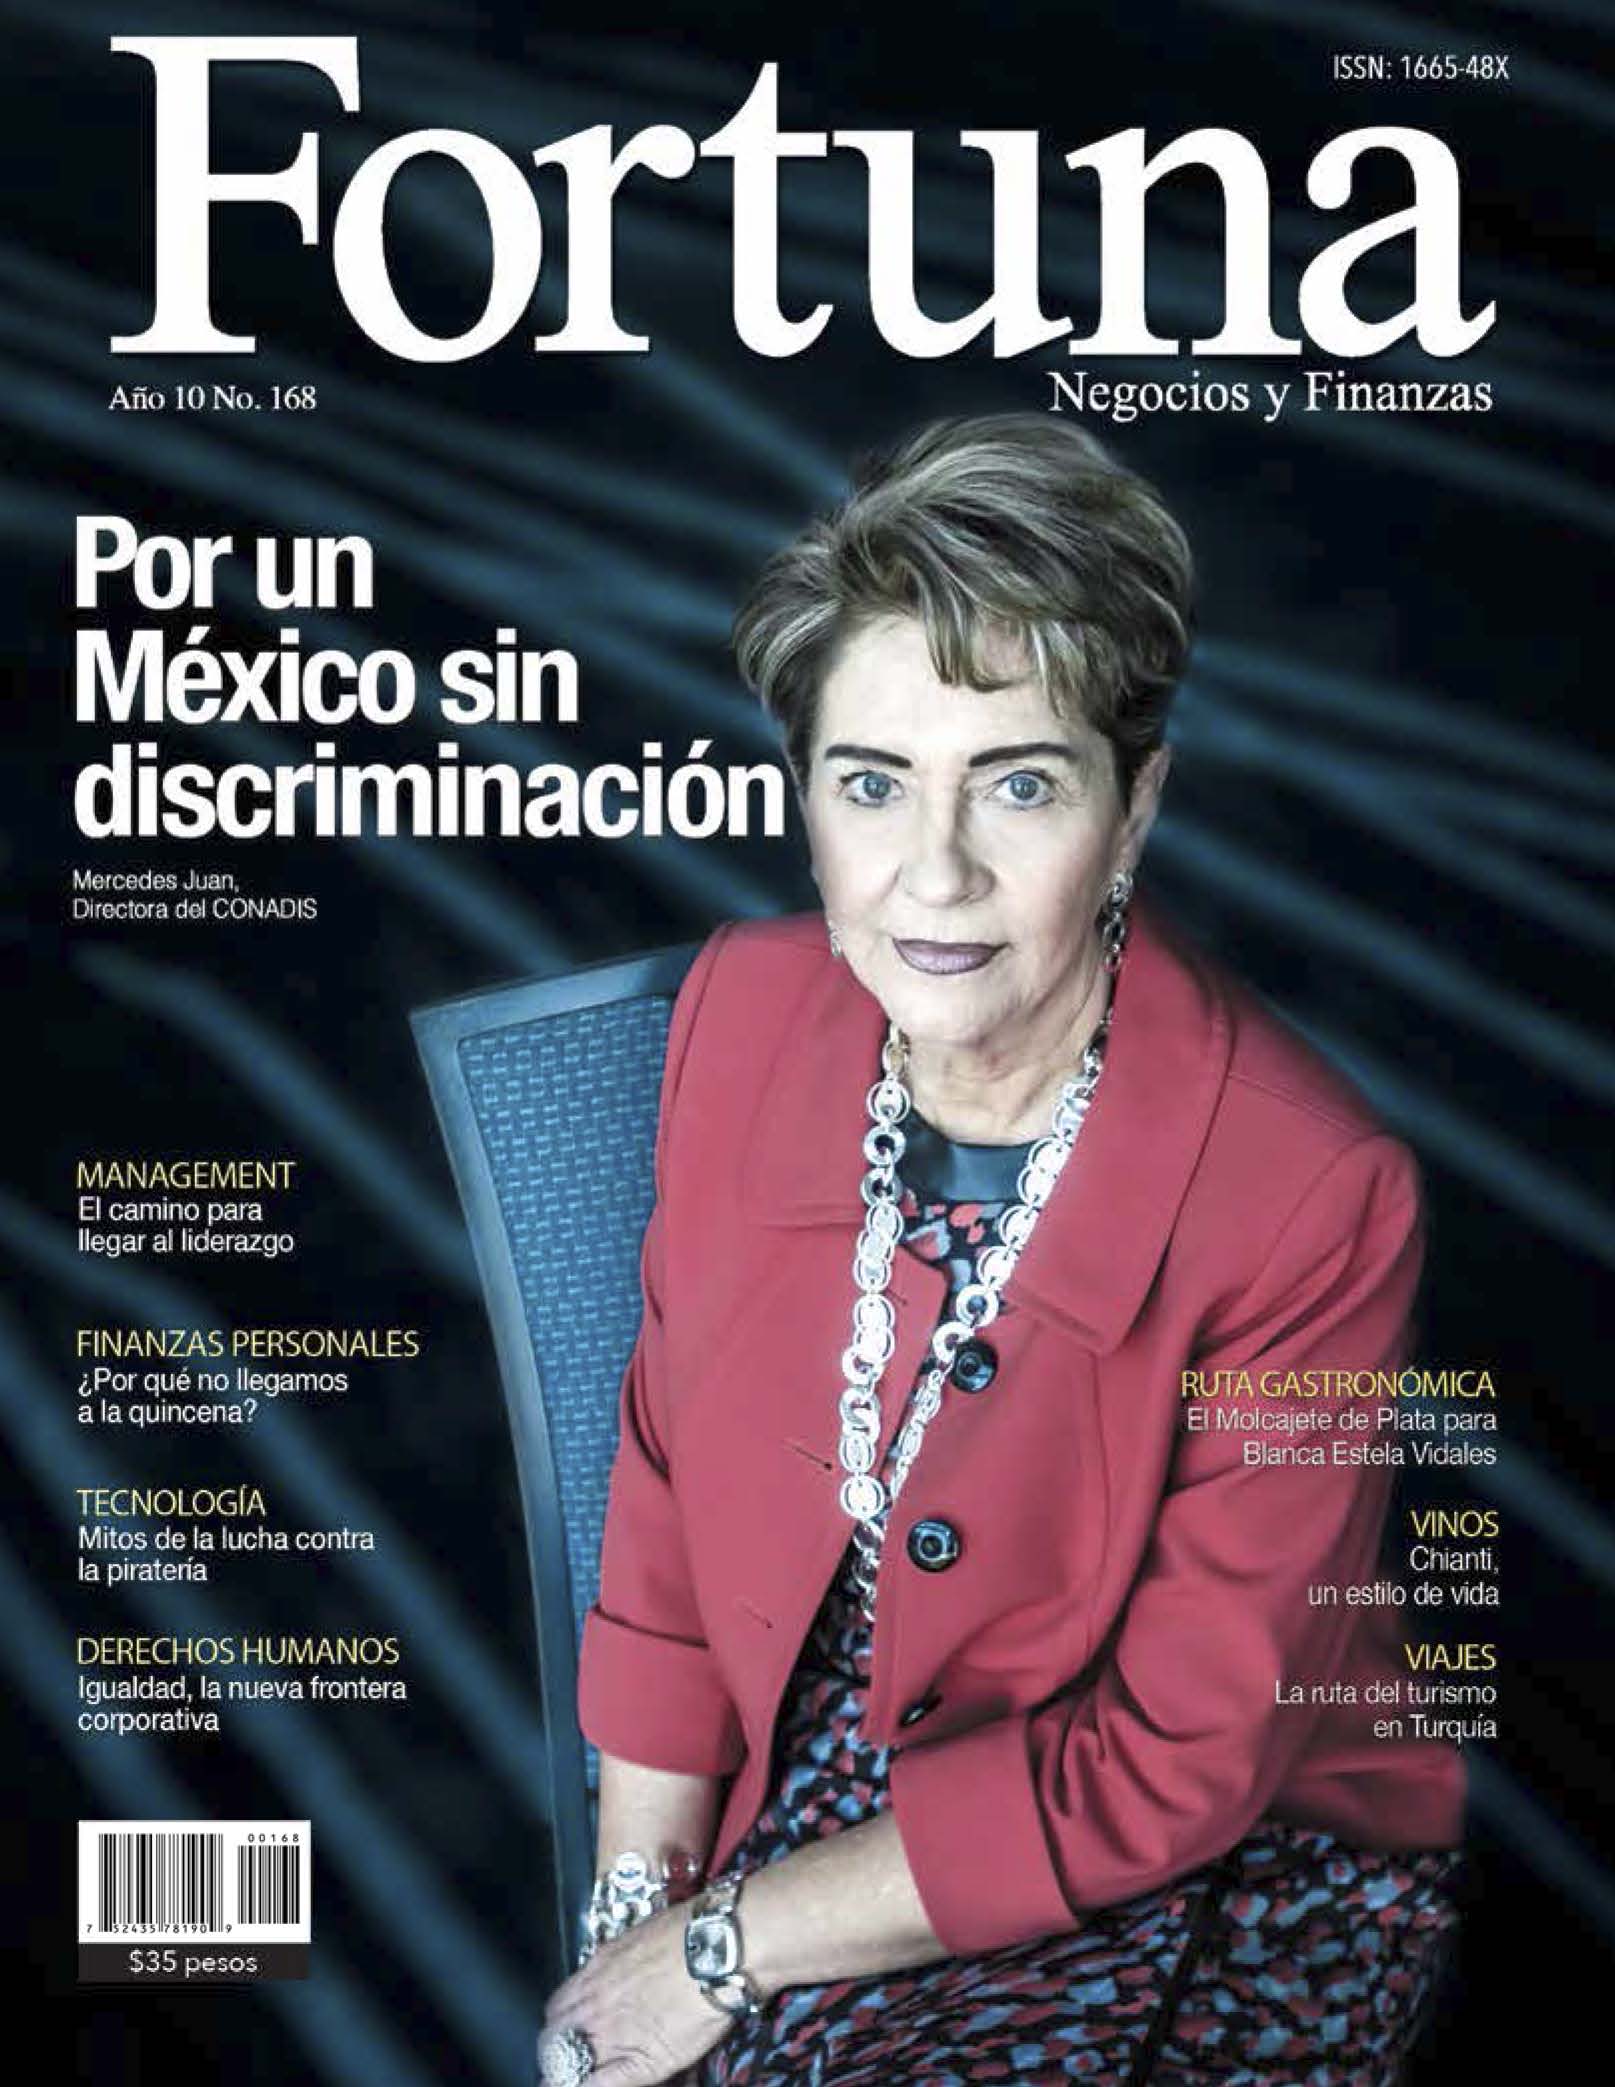 Portada de la Revista Fortuna, es la Dra. Mercedes Juan, Directora General del CONADIS, sentada en una silla.